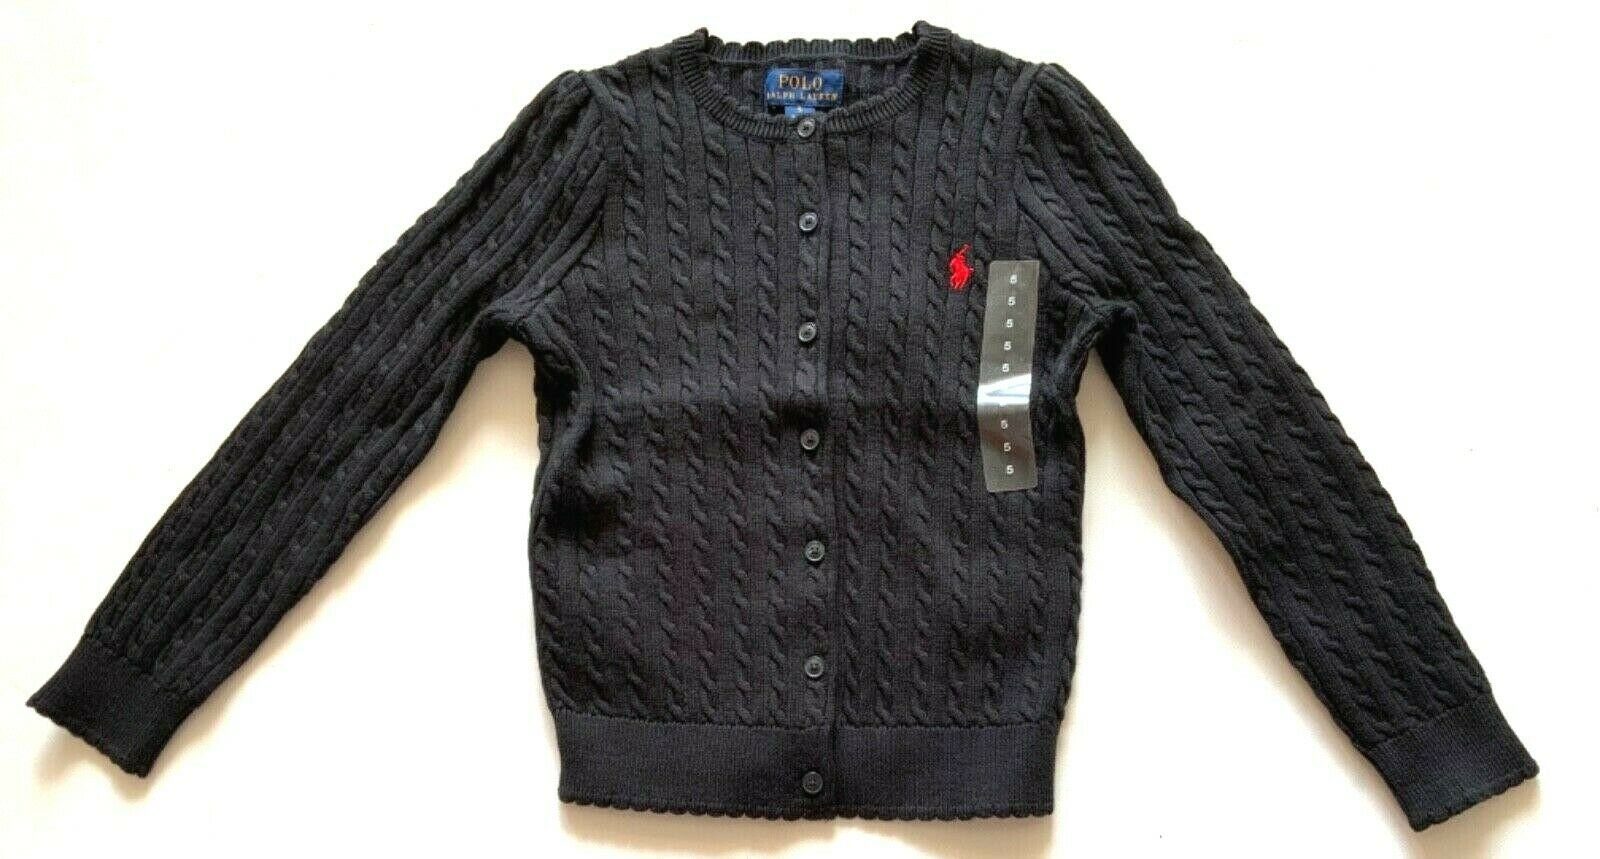 Polo Ralph Lauren Strickpullover »Ralph Lauren Kinder Pullover, Polo Ralph  Lauren Cardigan - TP-Sweater.« online kaufen | OTTO